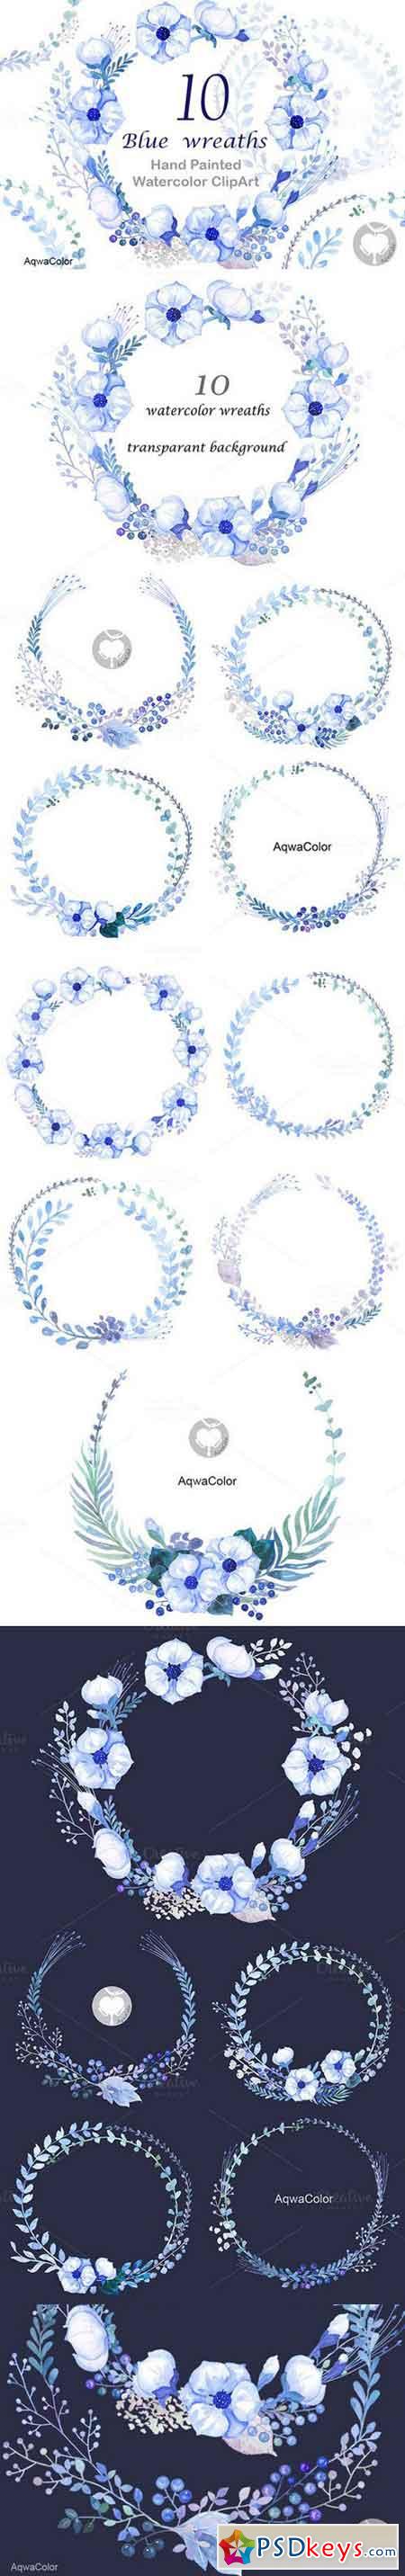 Watercolour clipart Blue Wreaths 718552